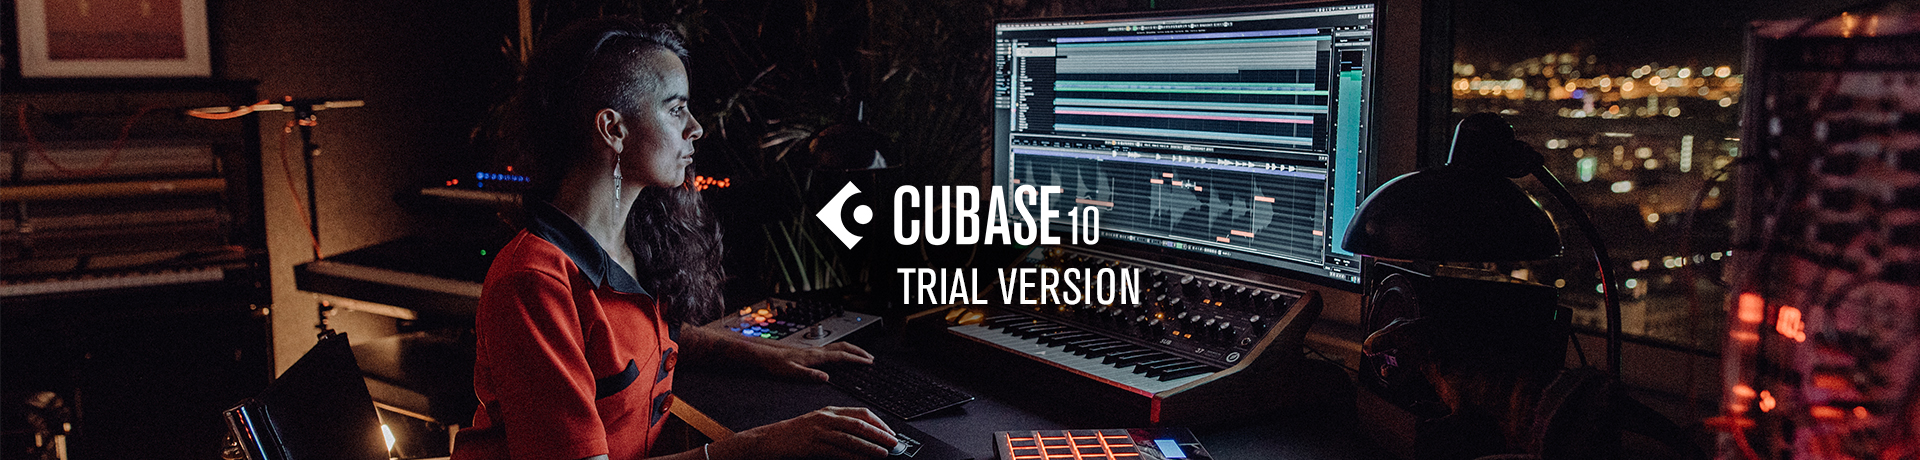 cubase 10 elements trial